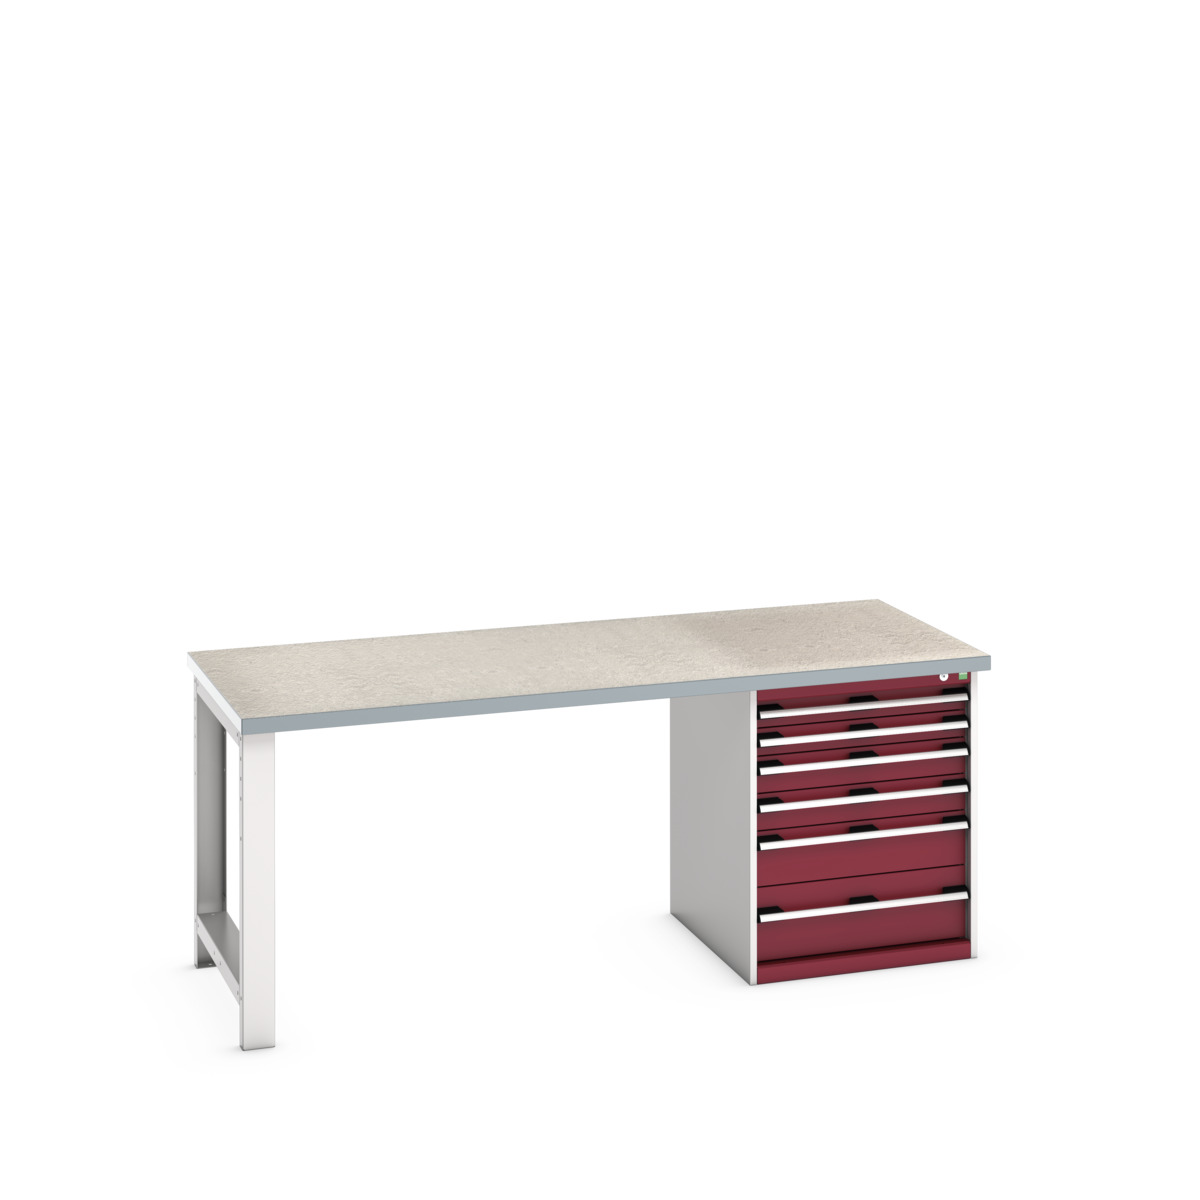 41004116.24V - cubio pedestal bench (lino)